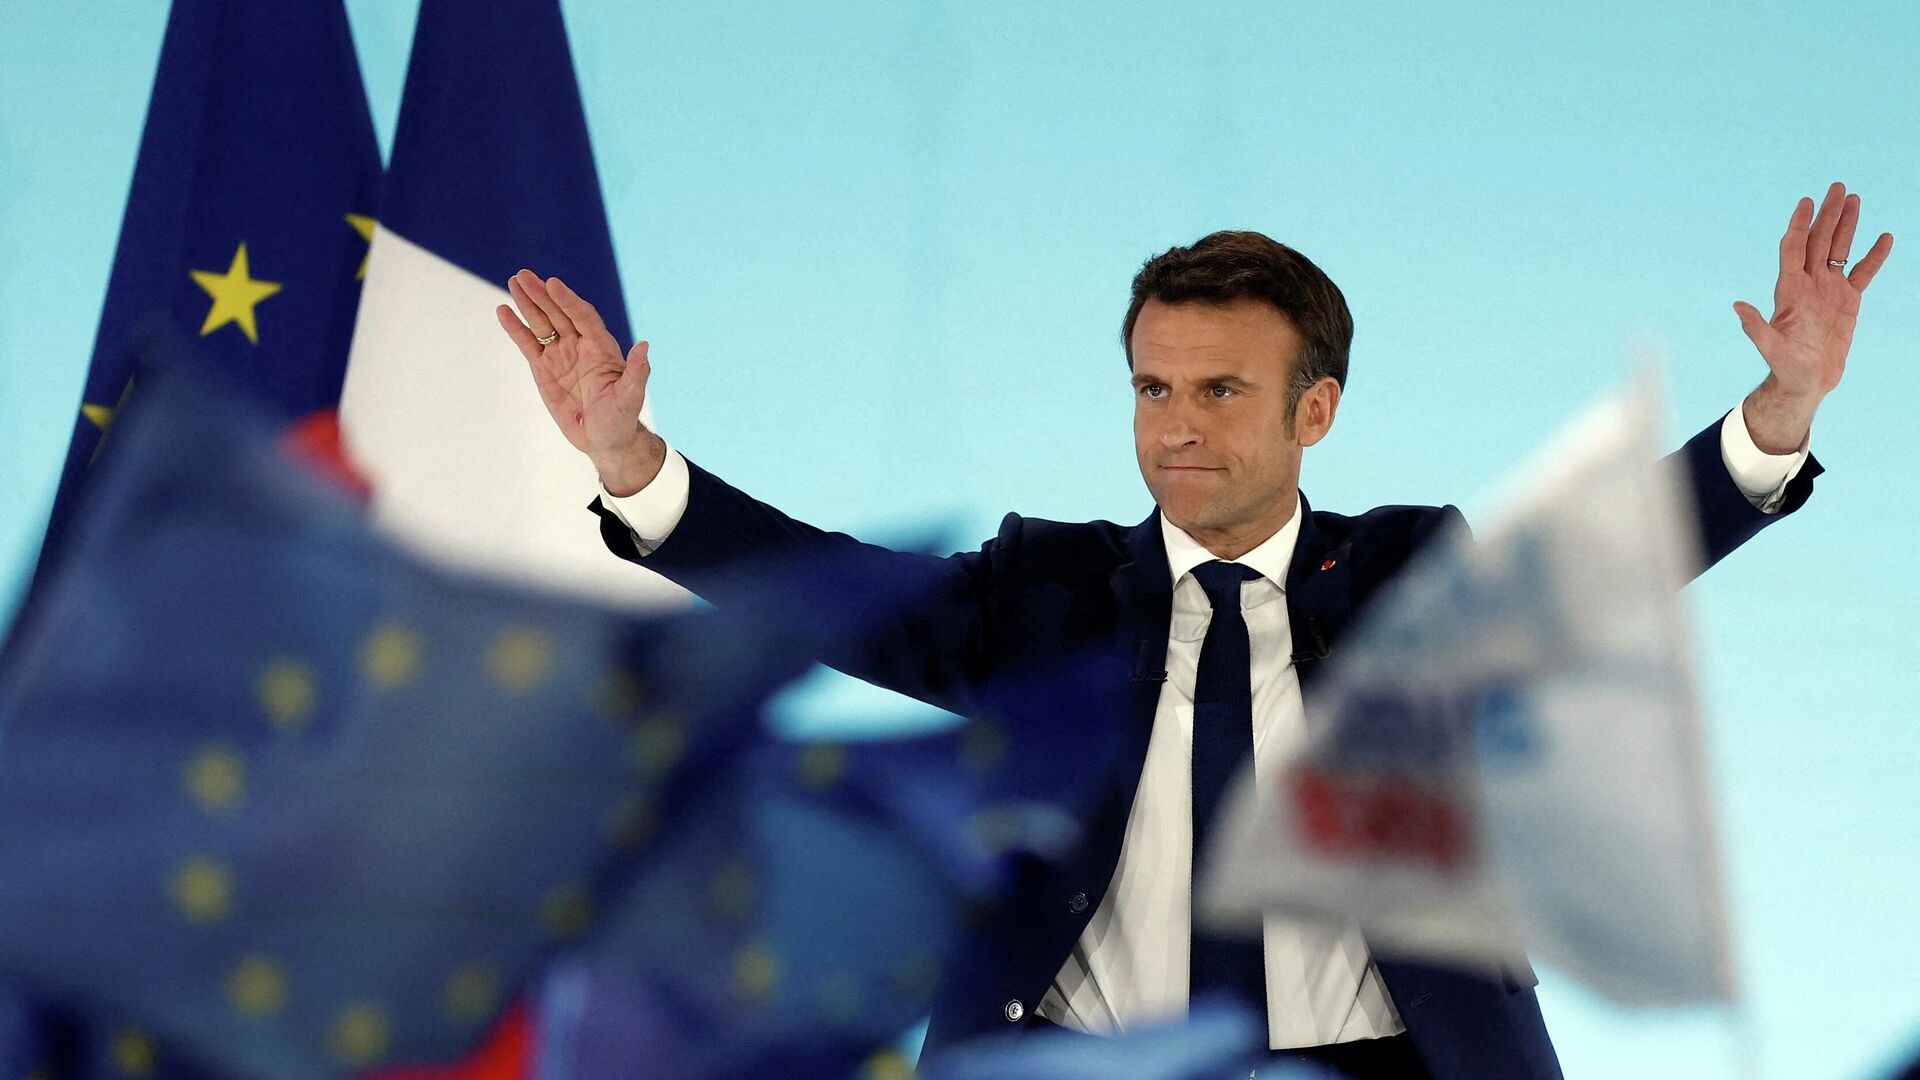 كيف سيتعامل ماكرون مع الزلزال السياسي؟فرنسا تشهد فوضى سياسية تهدد باستمرار البلاد